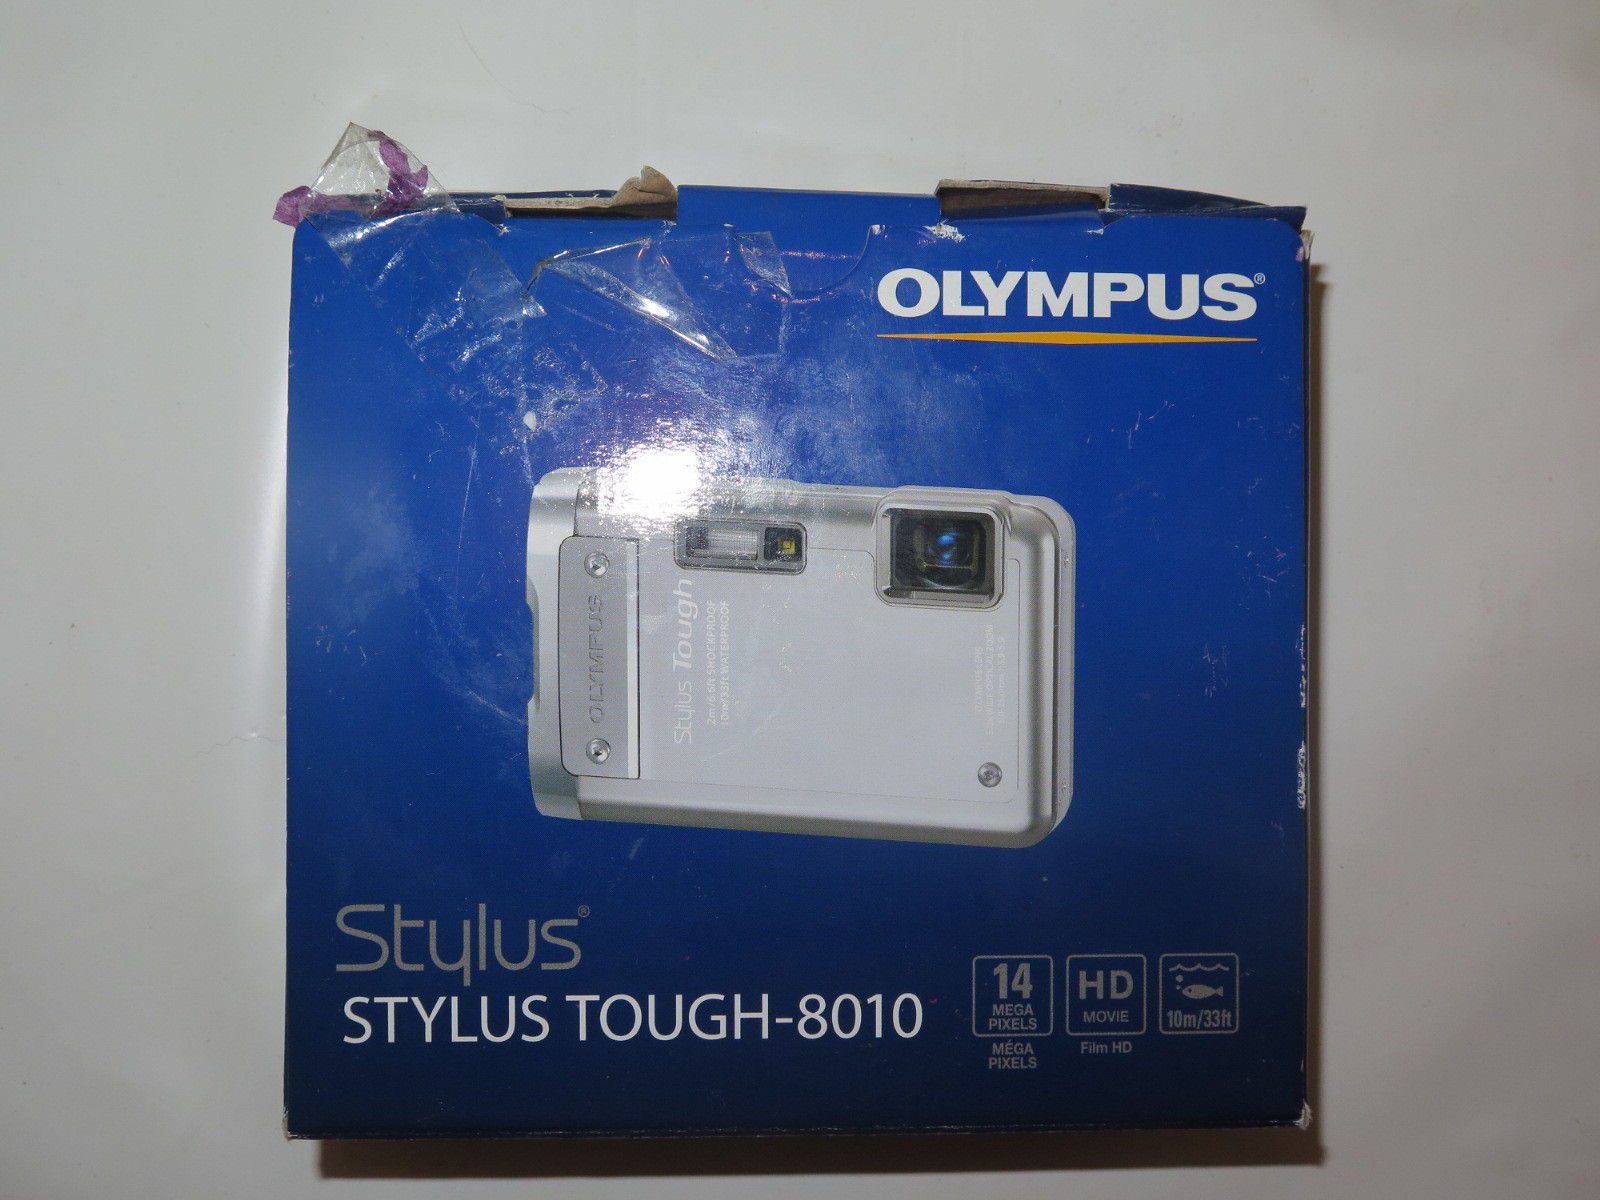 Olympus stylus tough 8010 digital camera